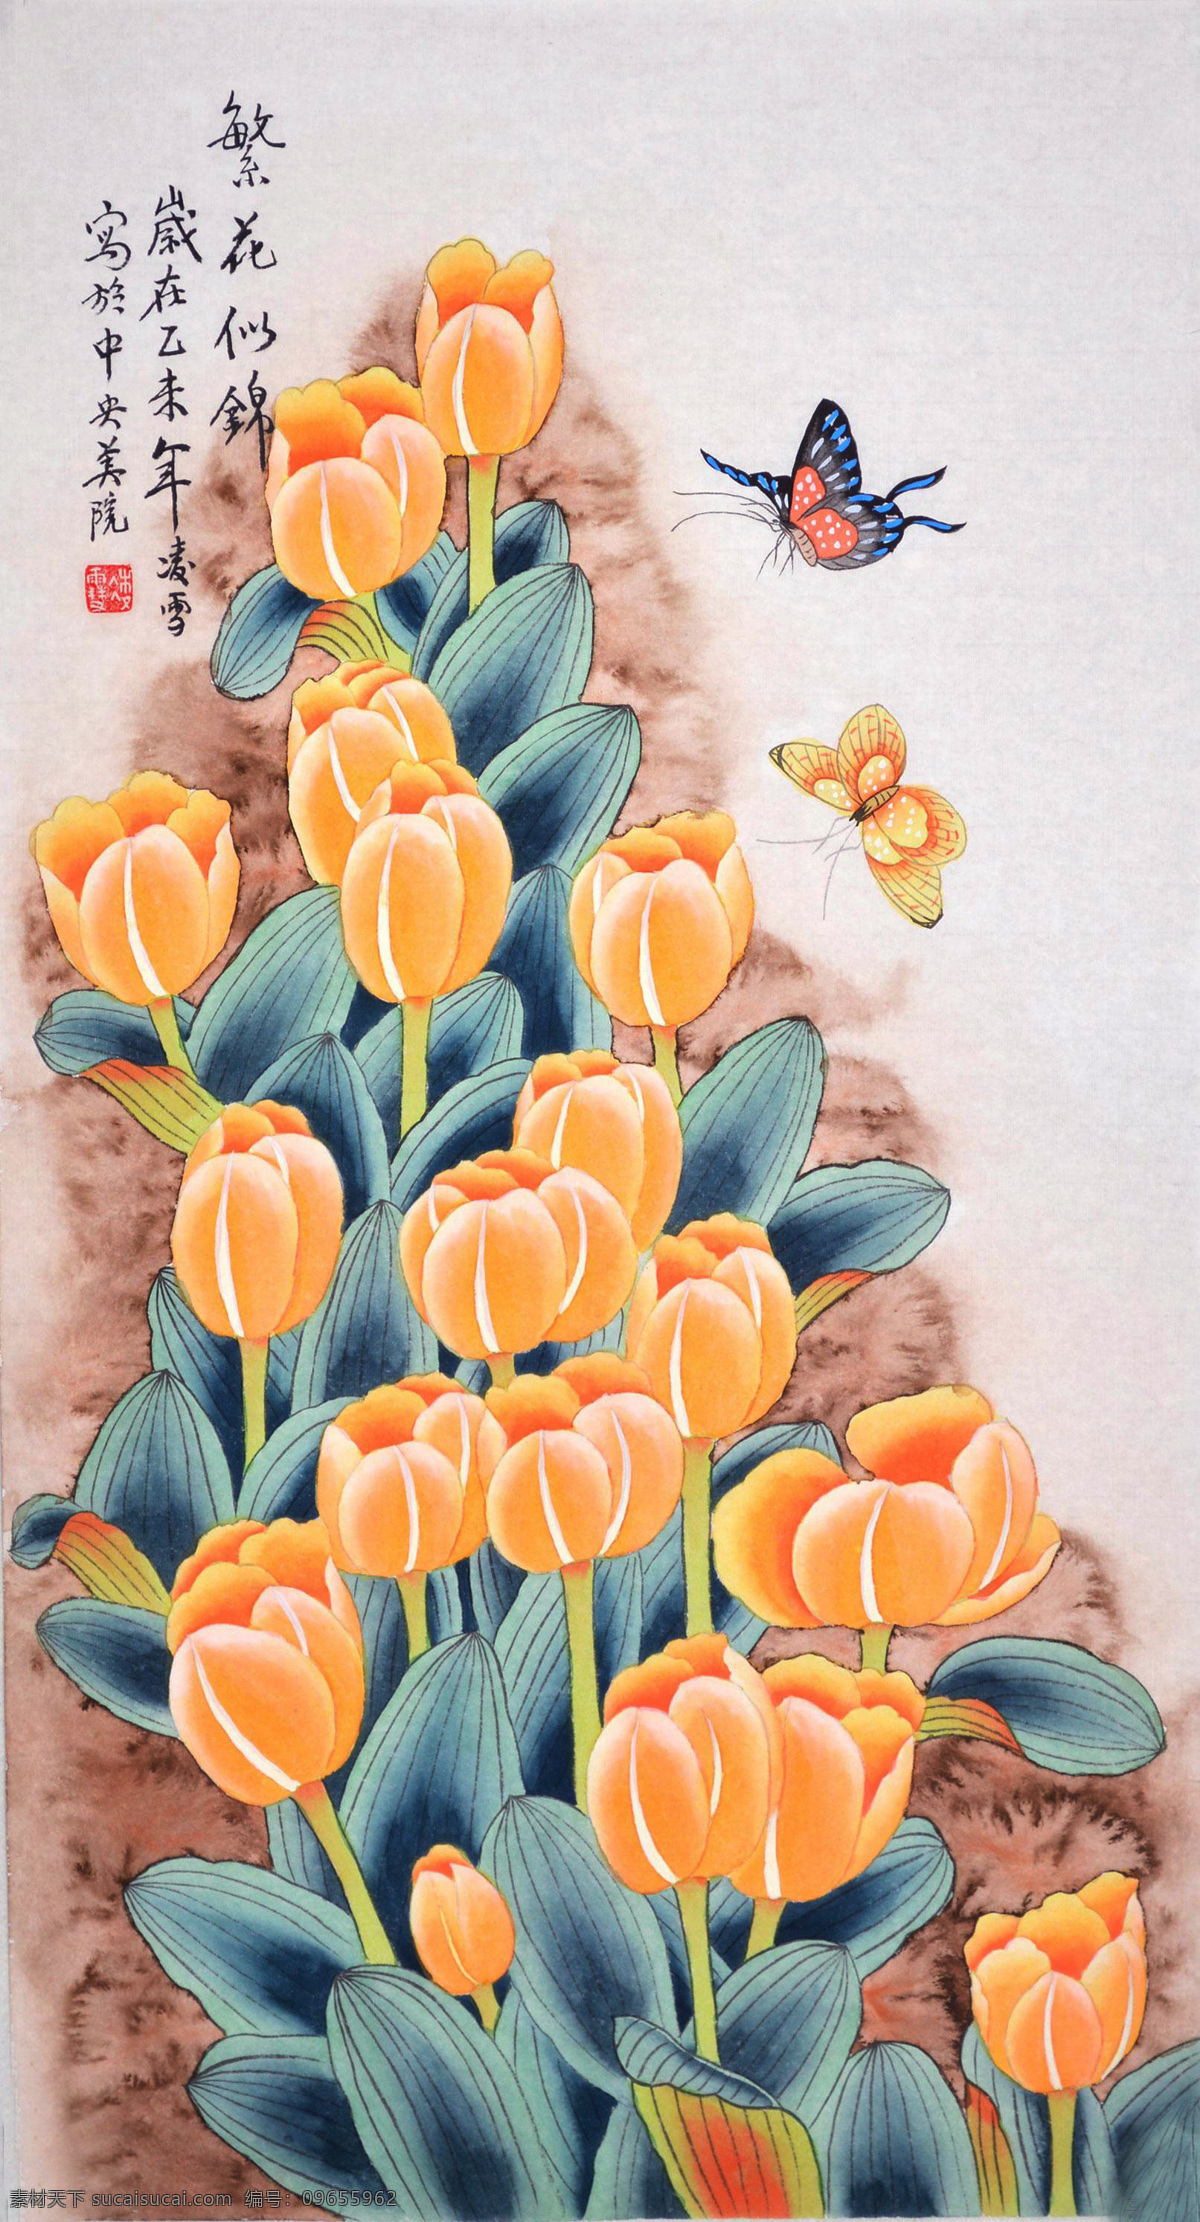 郁金香 蝴蝶 国画 水墨画 花鸟画 工笔画 中国画 艺术绘画 文化艺术 绘画书法